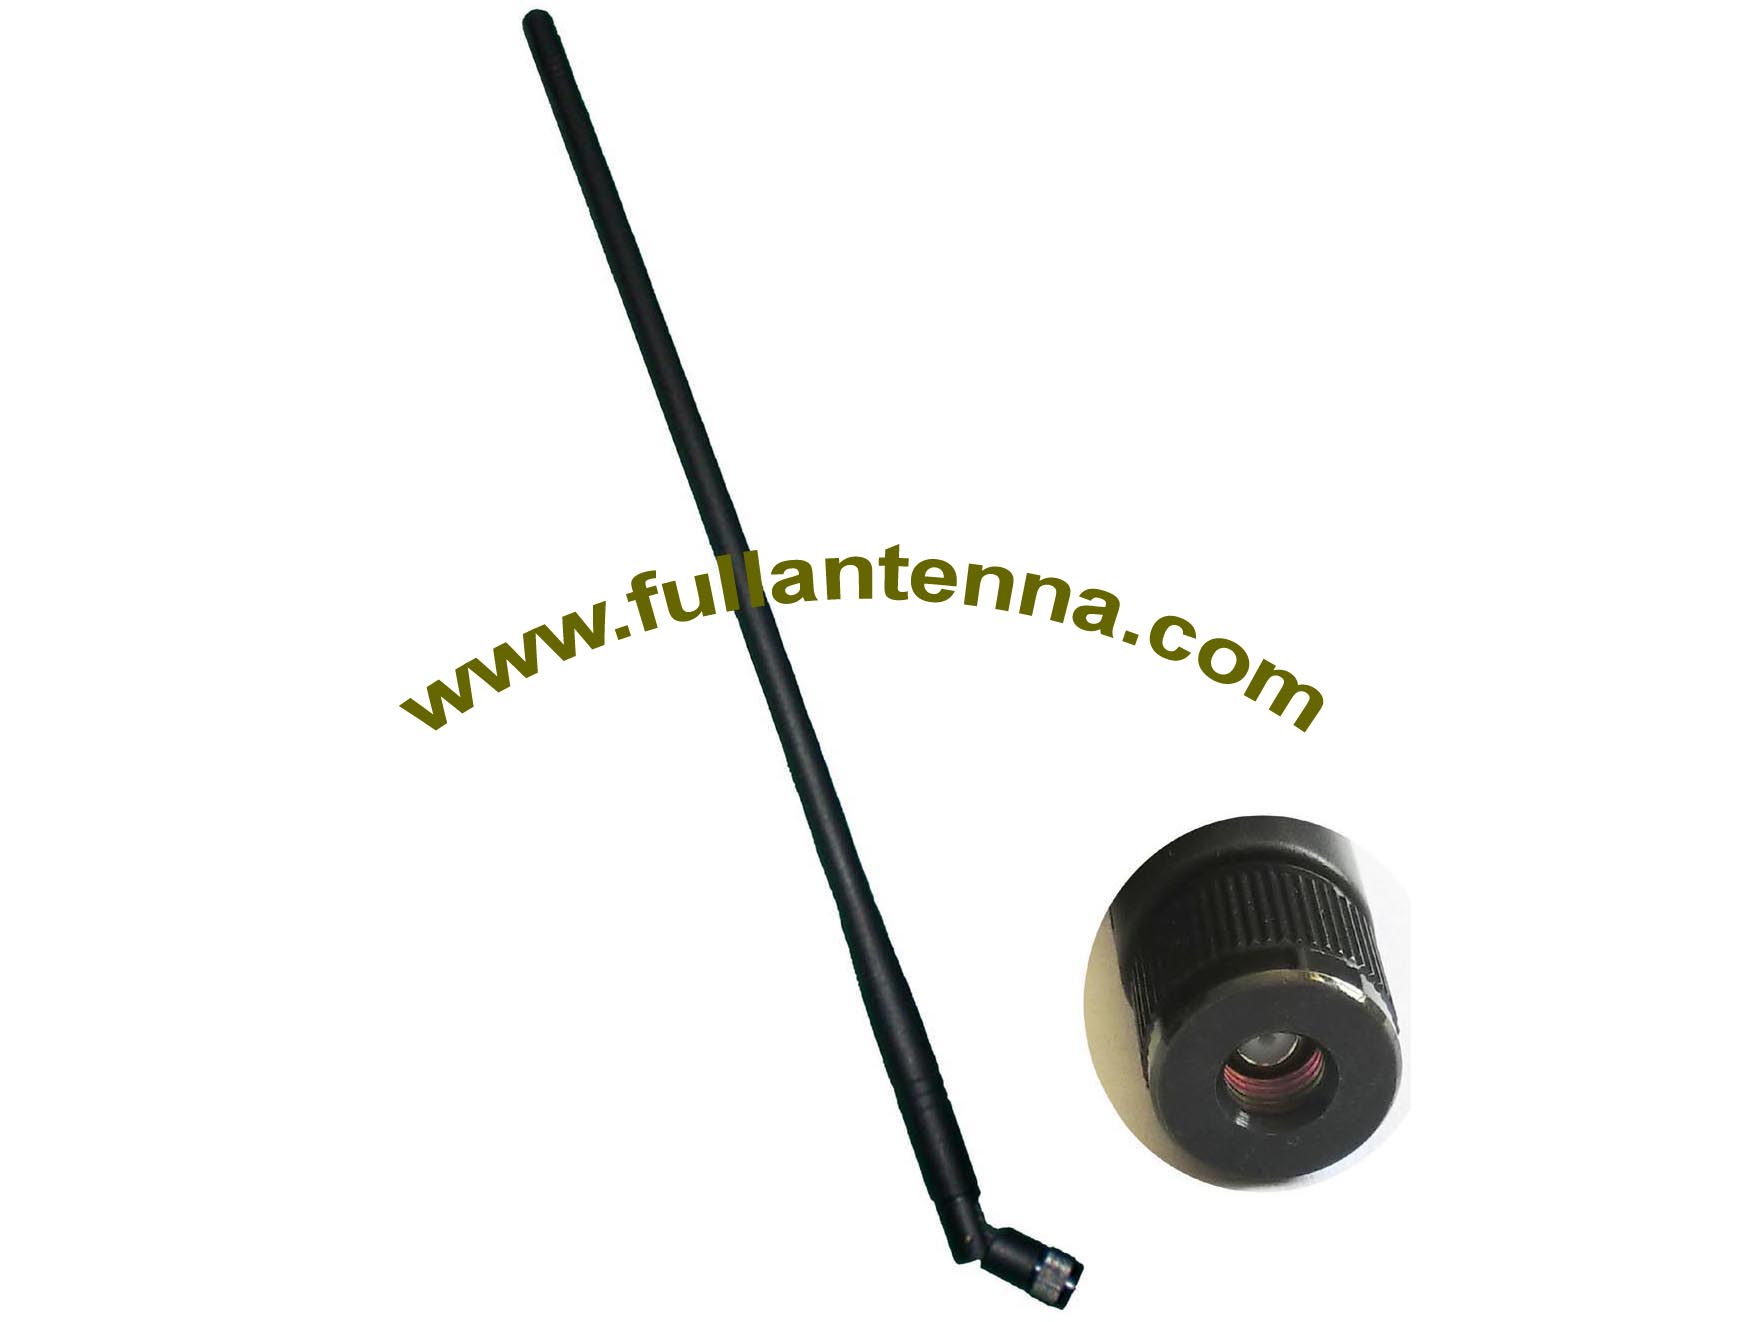 P / N: FA2400.0512, gumowa antena WiFi / 2.4G, silny sygnał 12DBI o wysokim wzmocnieniu dla urządzenia wifi